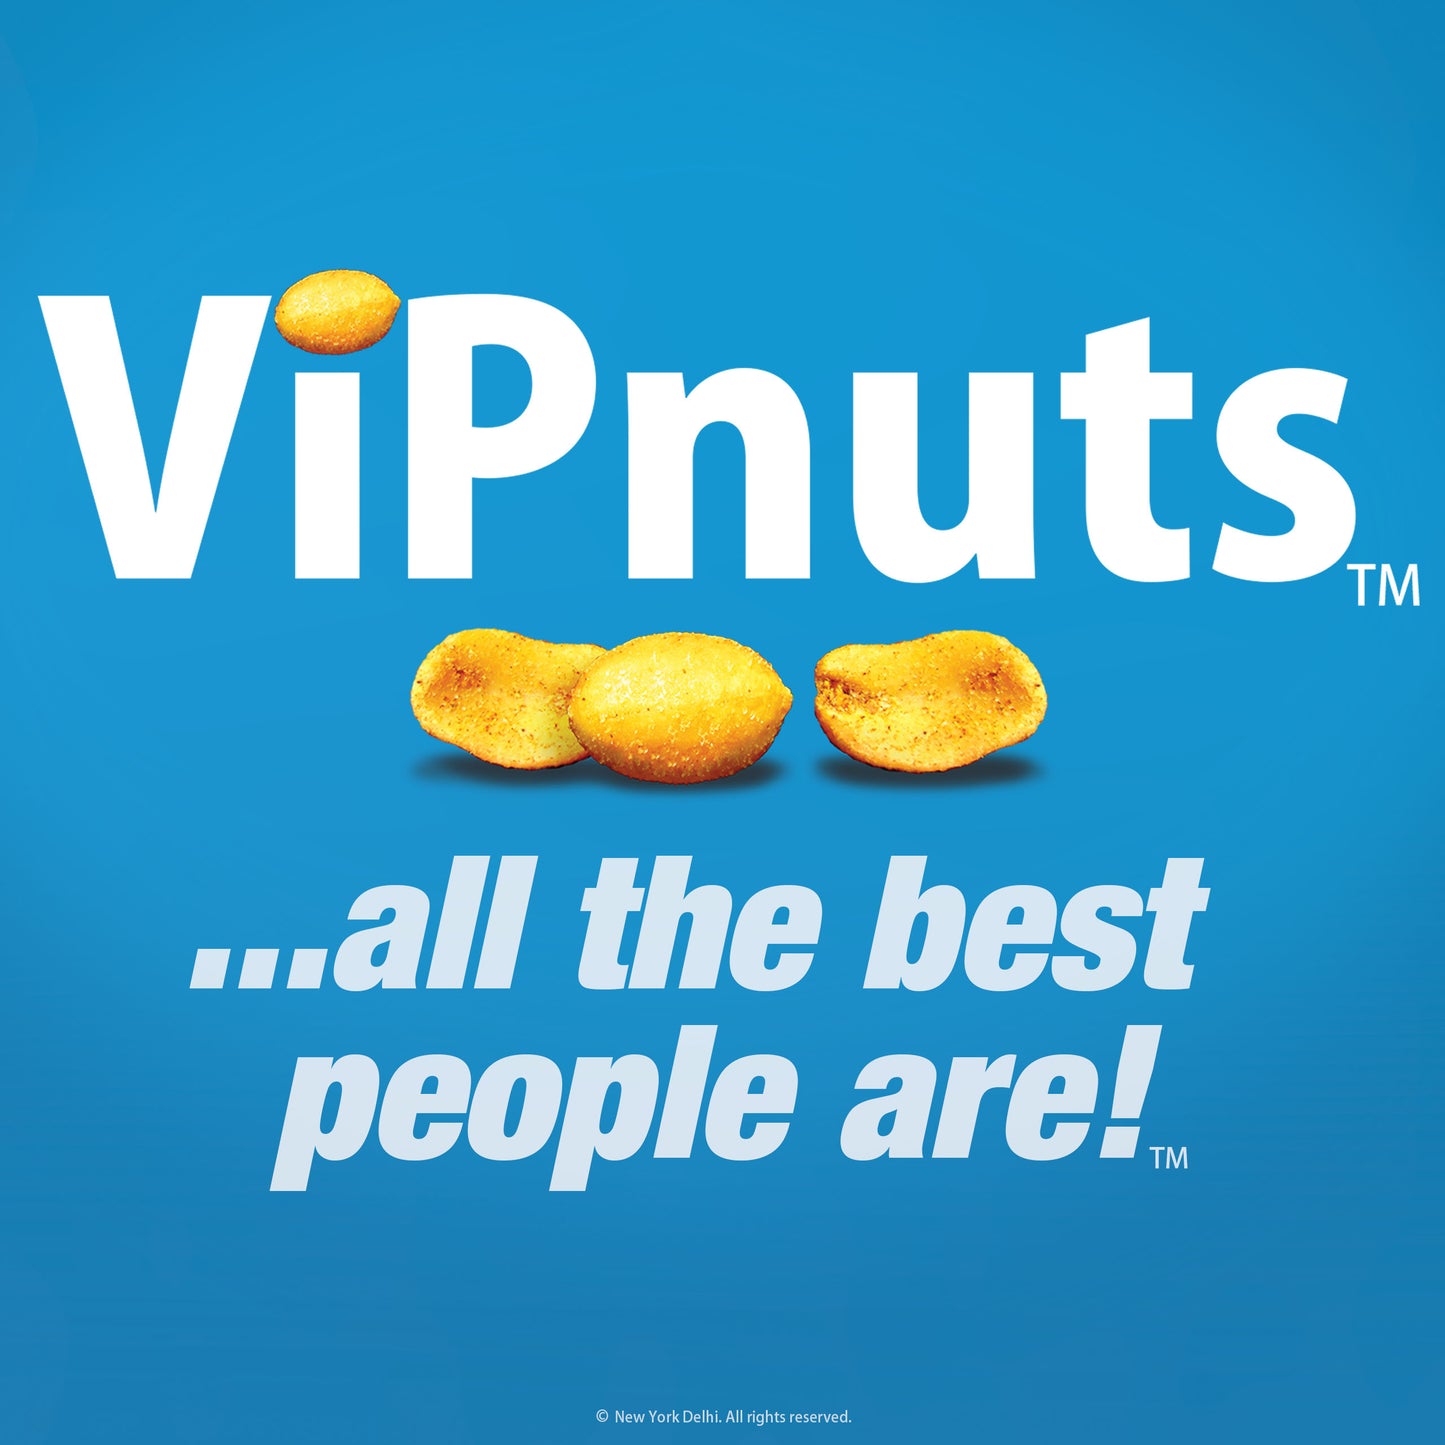 ViPnuts Bollywood BBQ peanuts 20x63g case